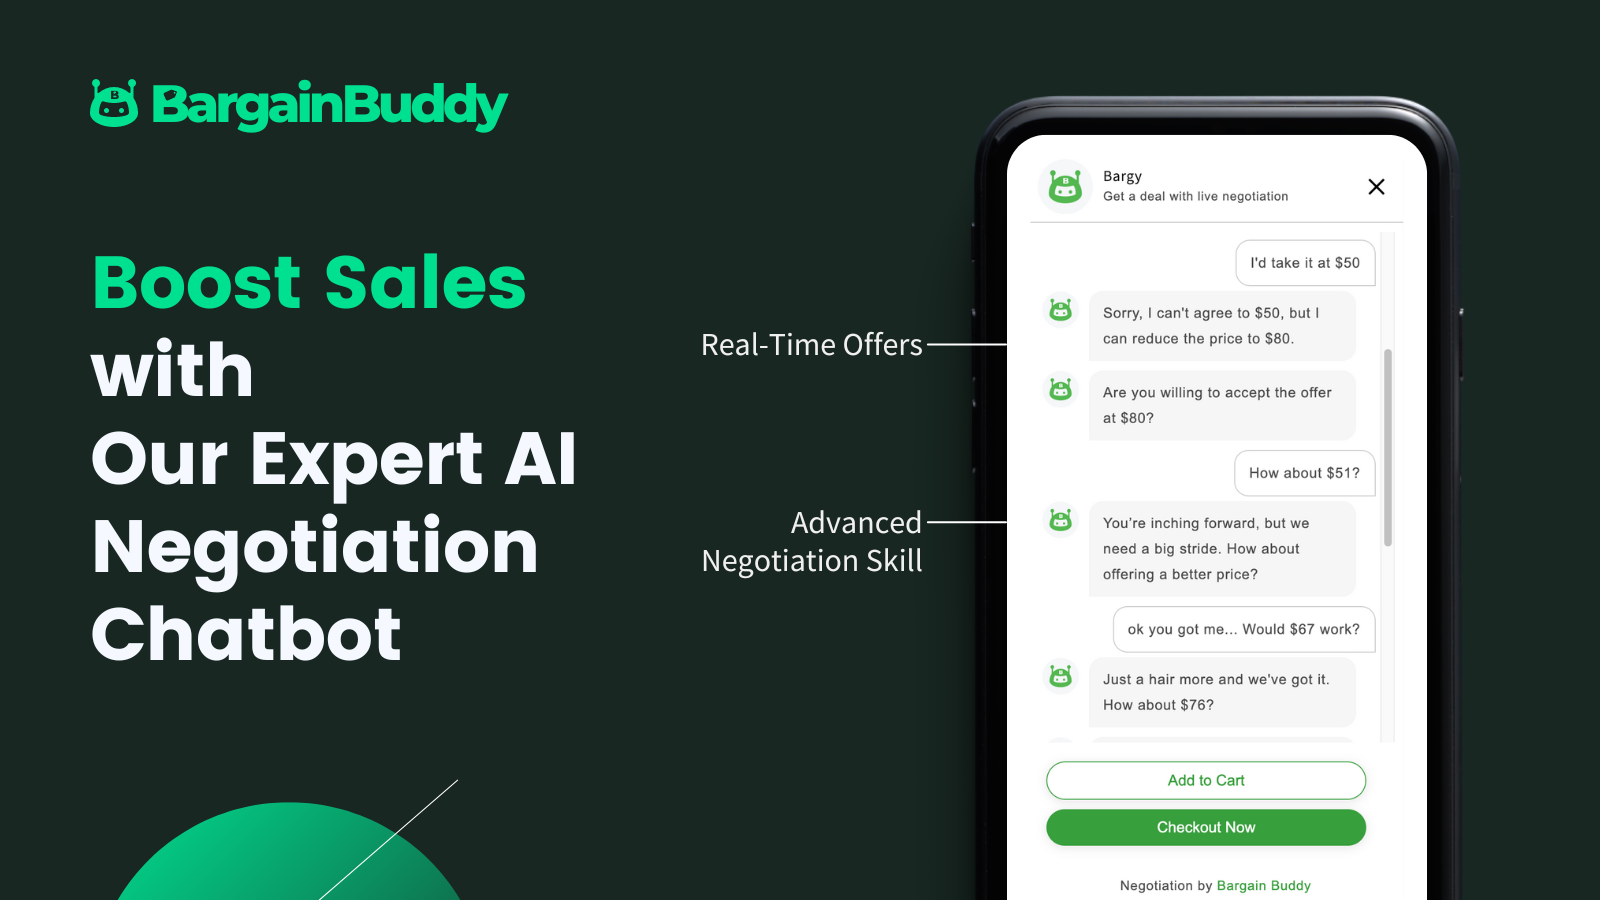 Impulsione as Vendas com nosso Chatbot de Negociação de IA especializado